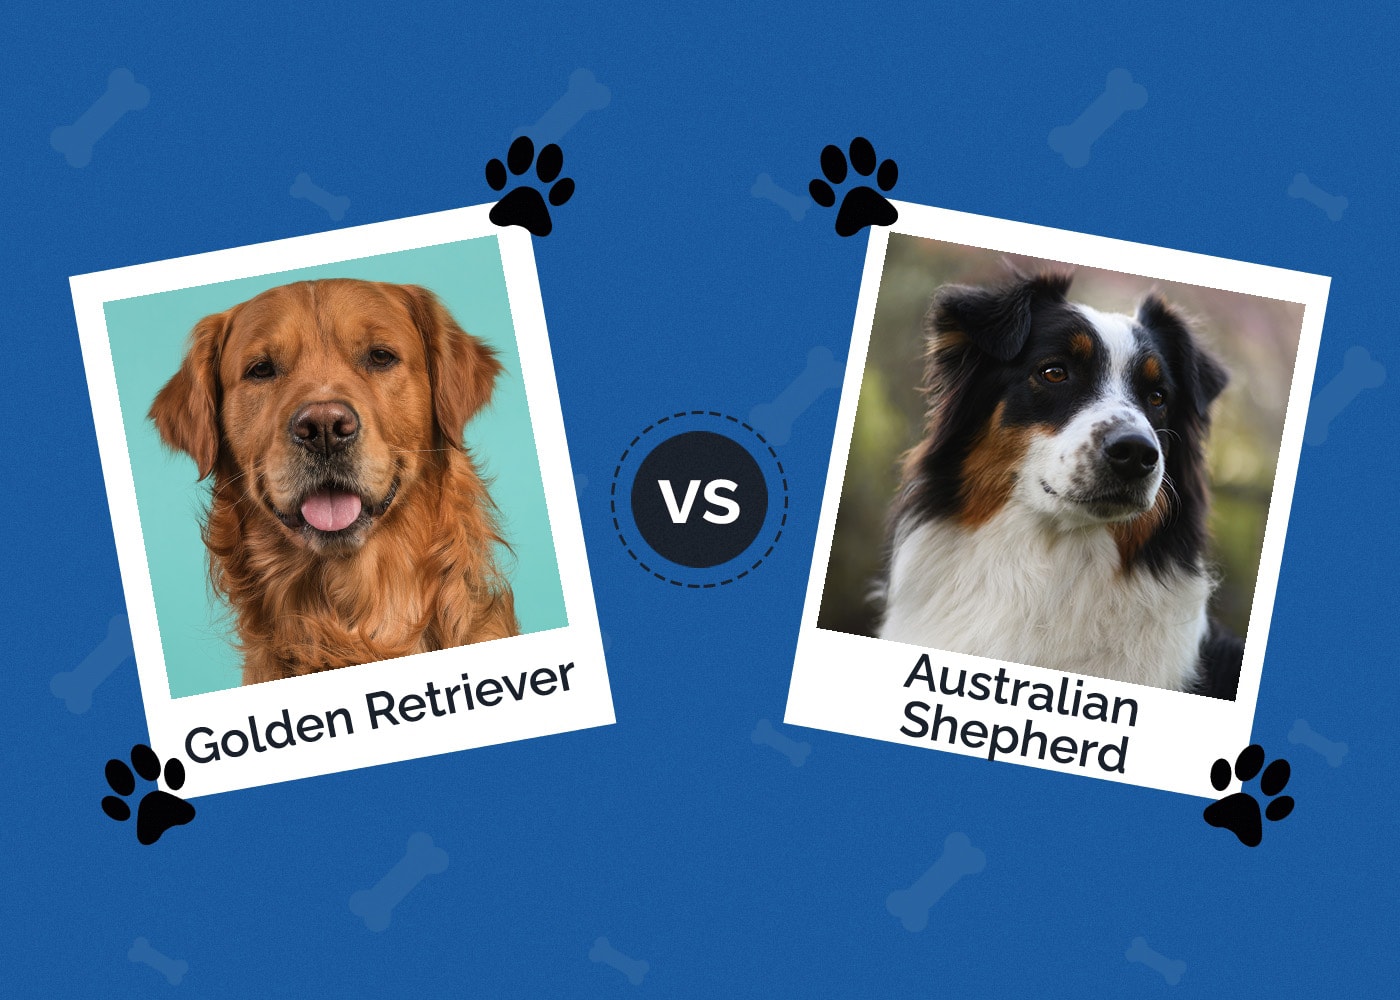 Golden Retriever vs Australian Shepherd